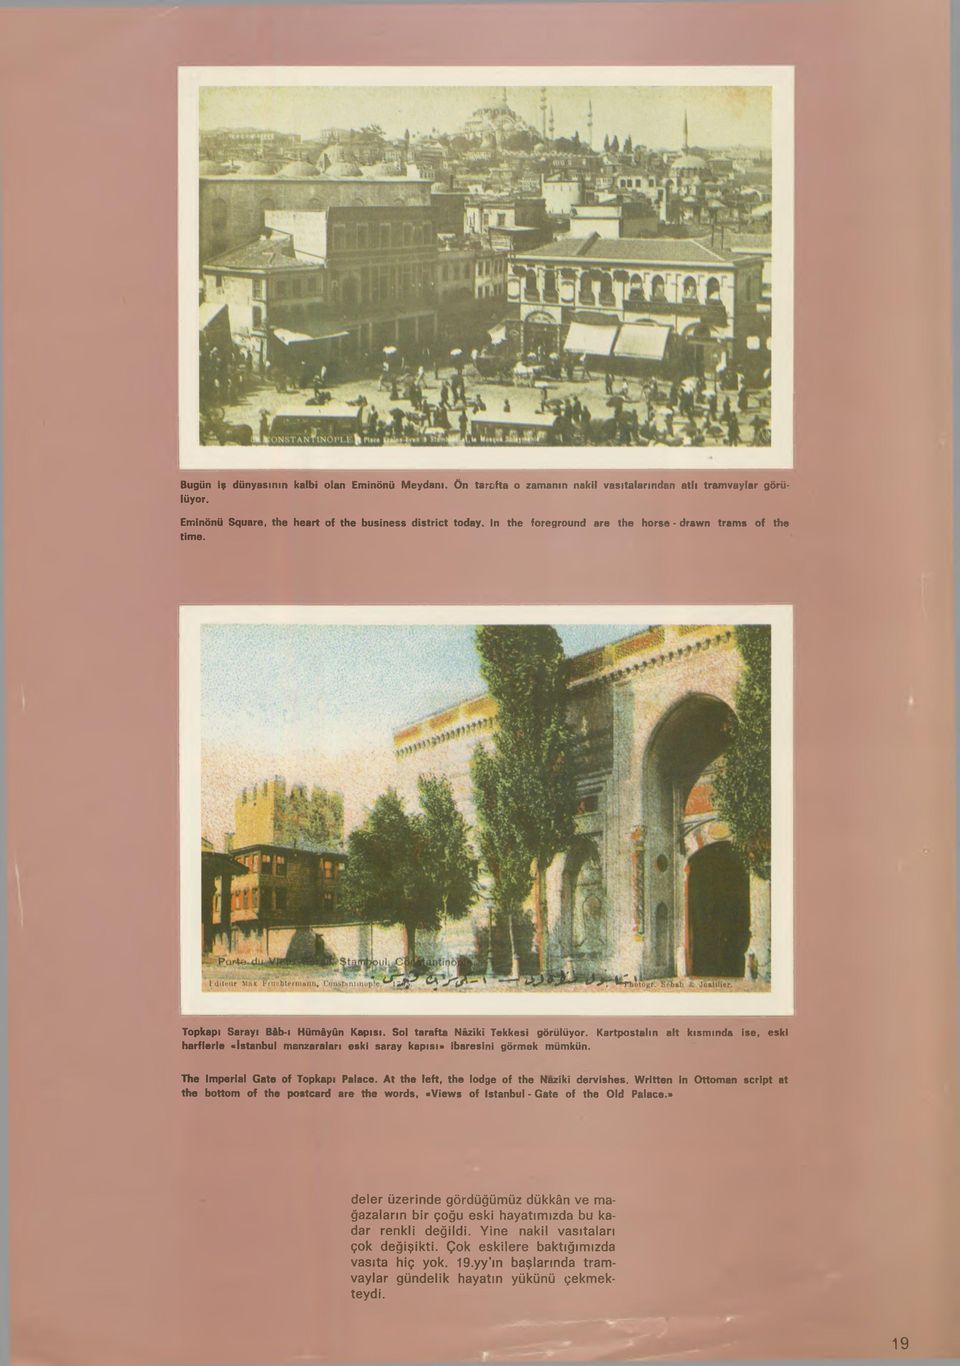 Kartpostalın alt kısmında ise, eski harflerle «İstanbul manzaraları eski saray kapısı» ibaresini görmek mümkün. The Imperial Gate of Topkapi Palace. At the left, the lodge of the Nazlkl dervishes.